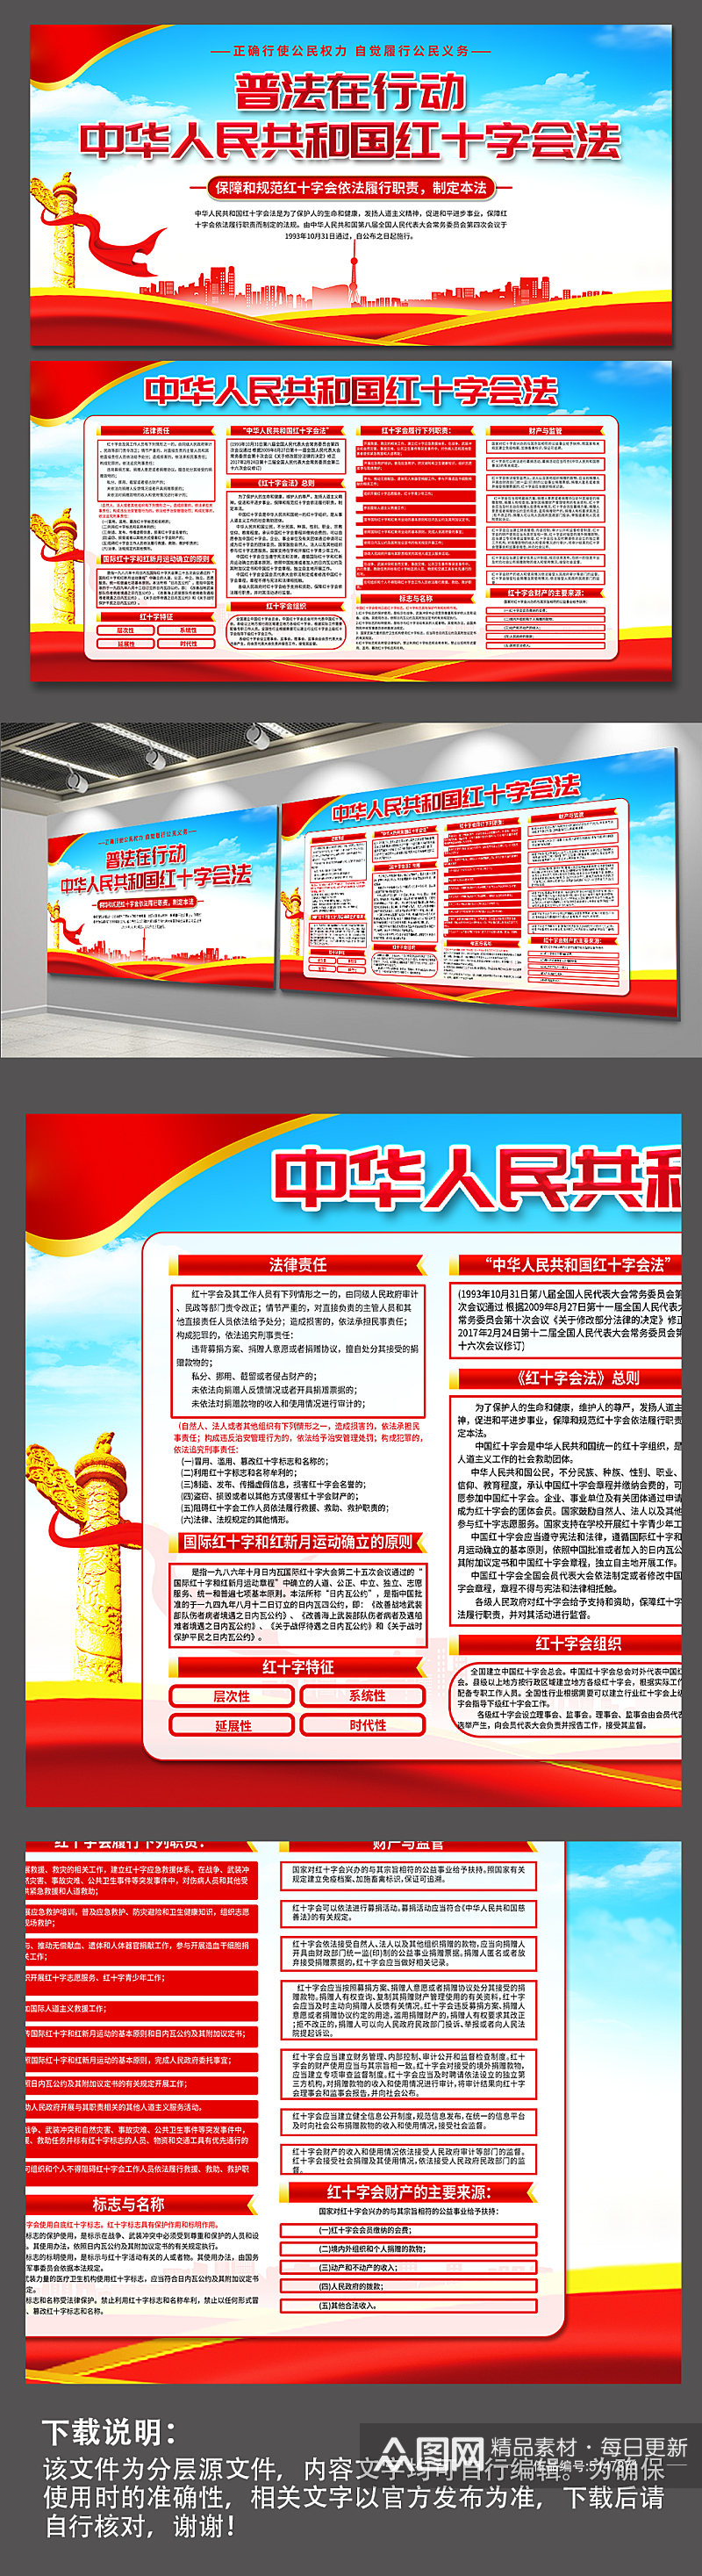 蓝色中华人民共和国红十字会法党建展板素材